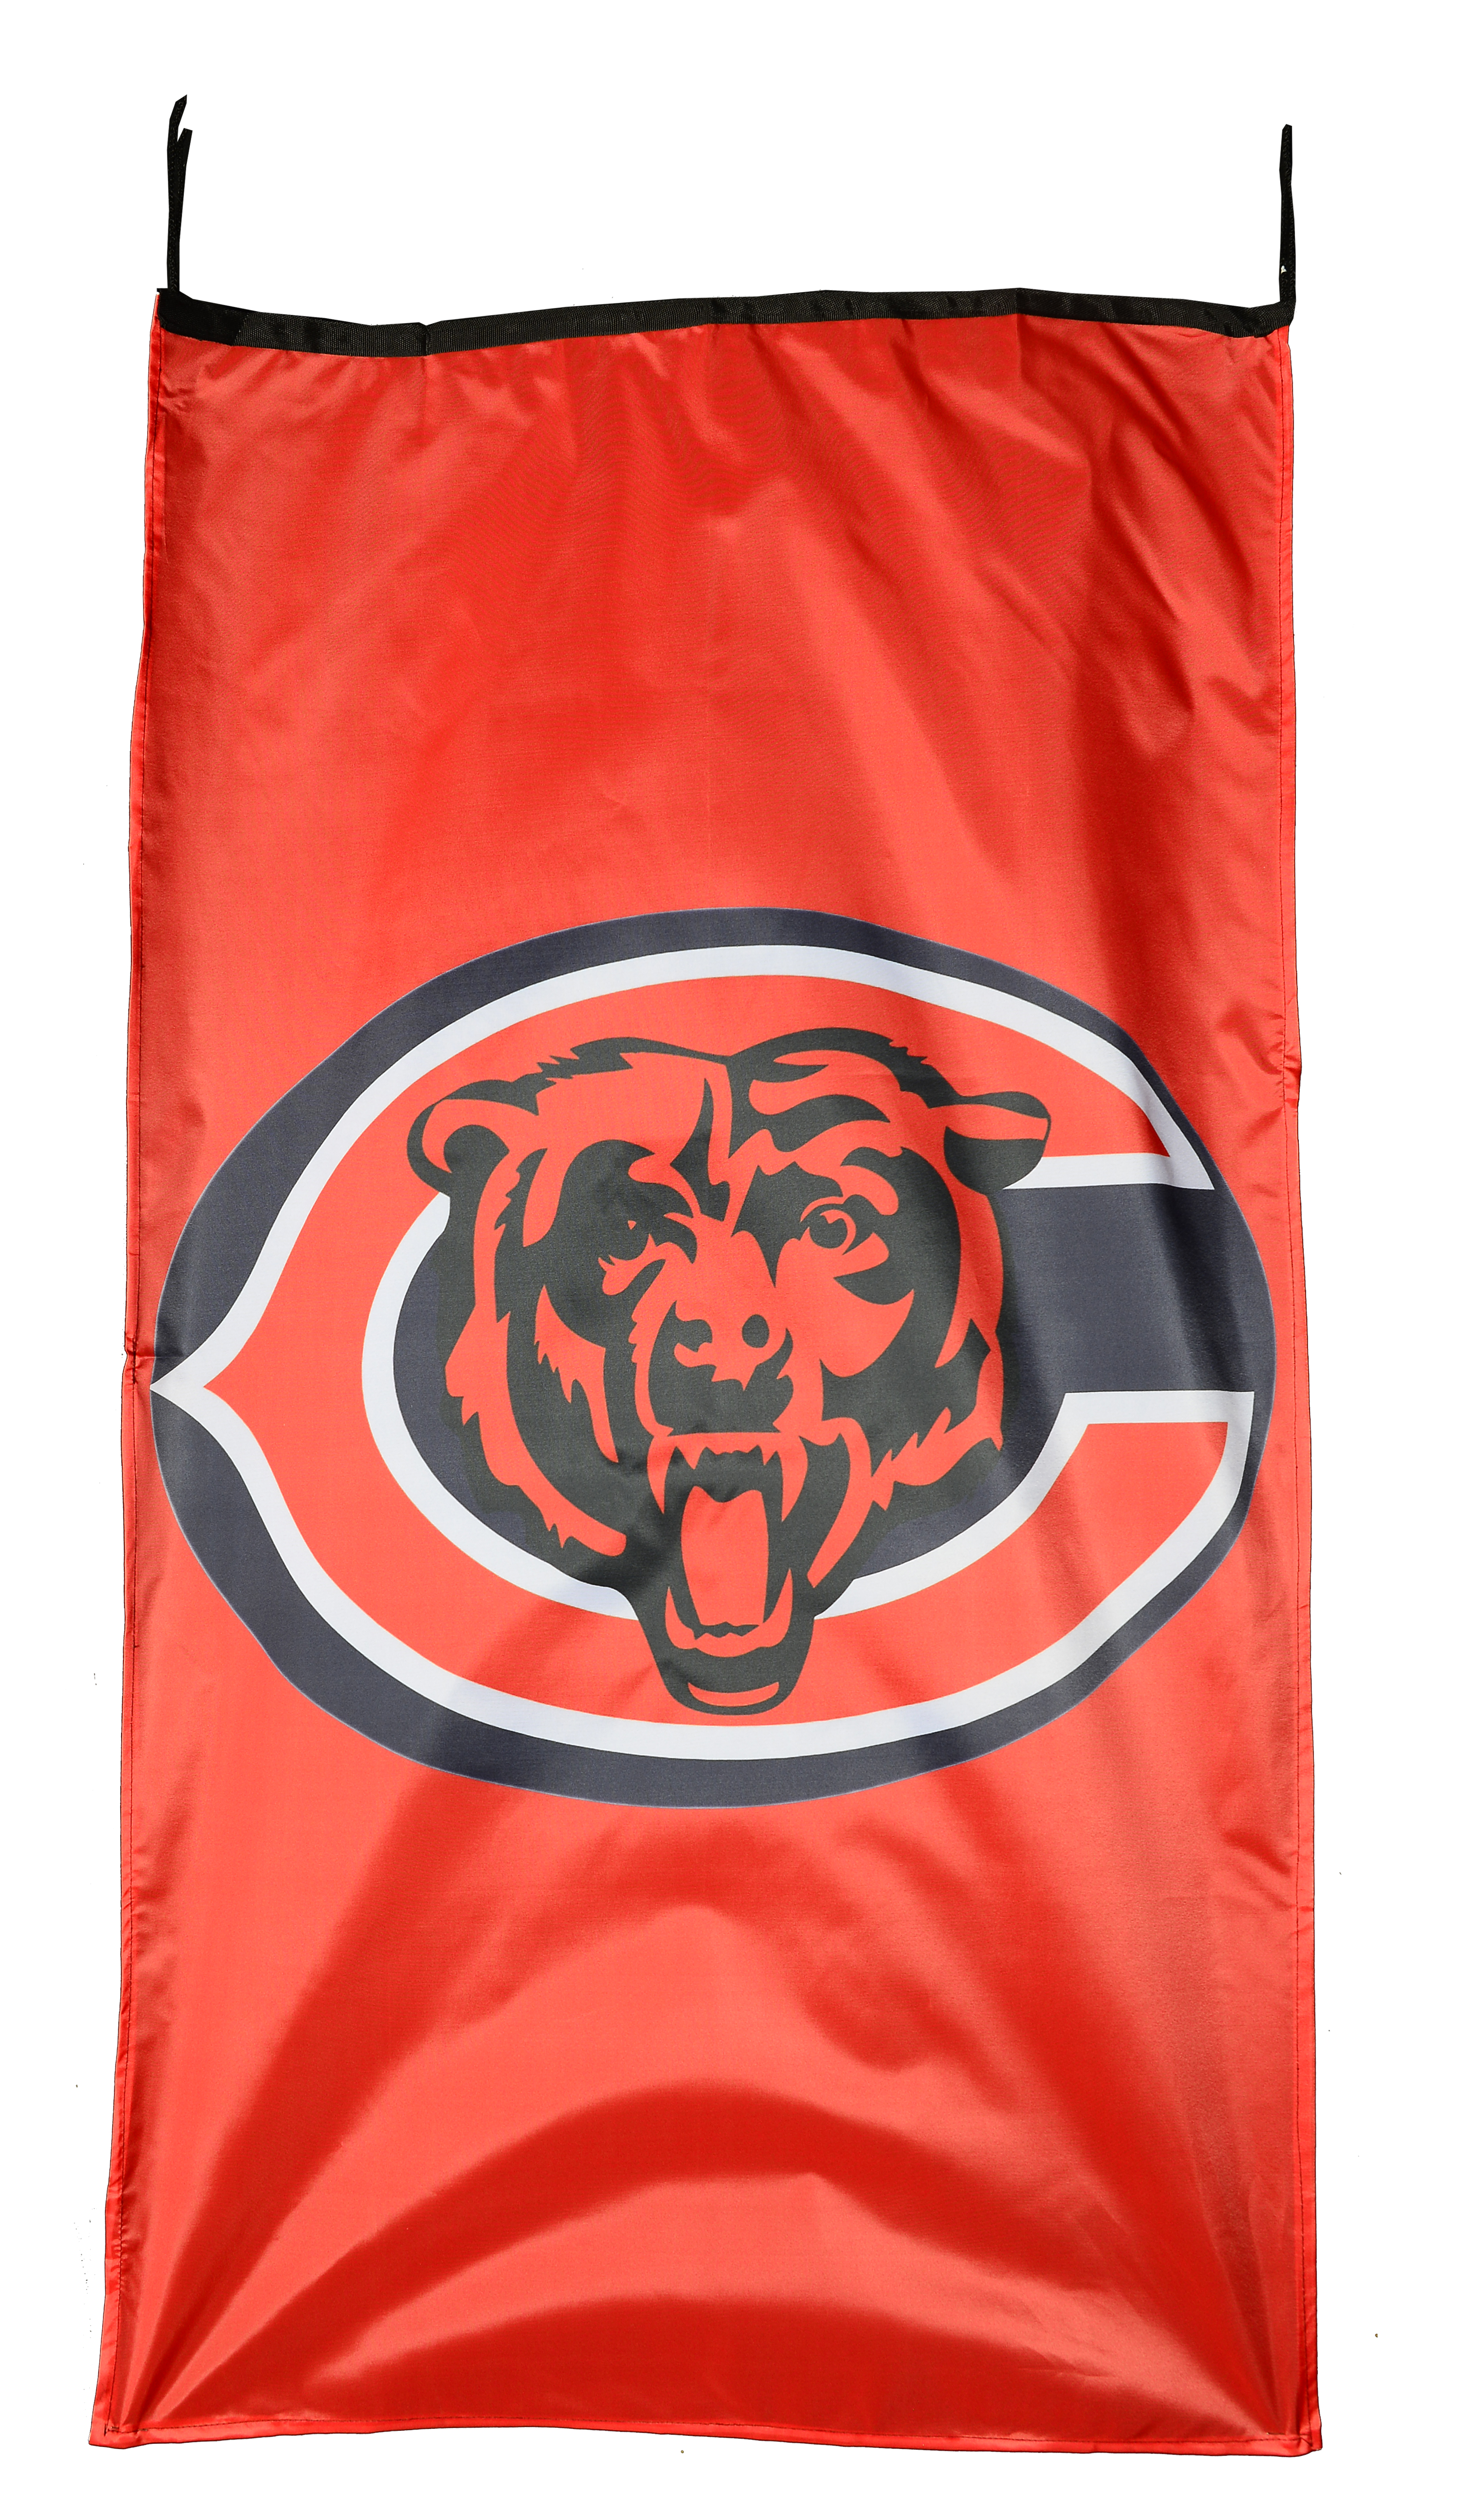 Flag  Chicago Bears Orange Vertical Flag / Banner 5 X 3 Ft (150 X 90 Cm) NFL Flags